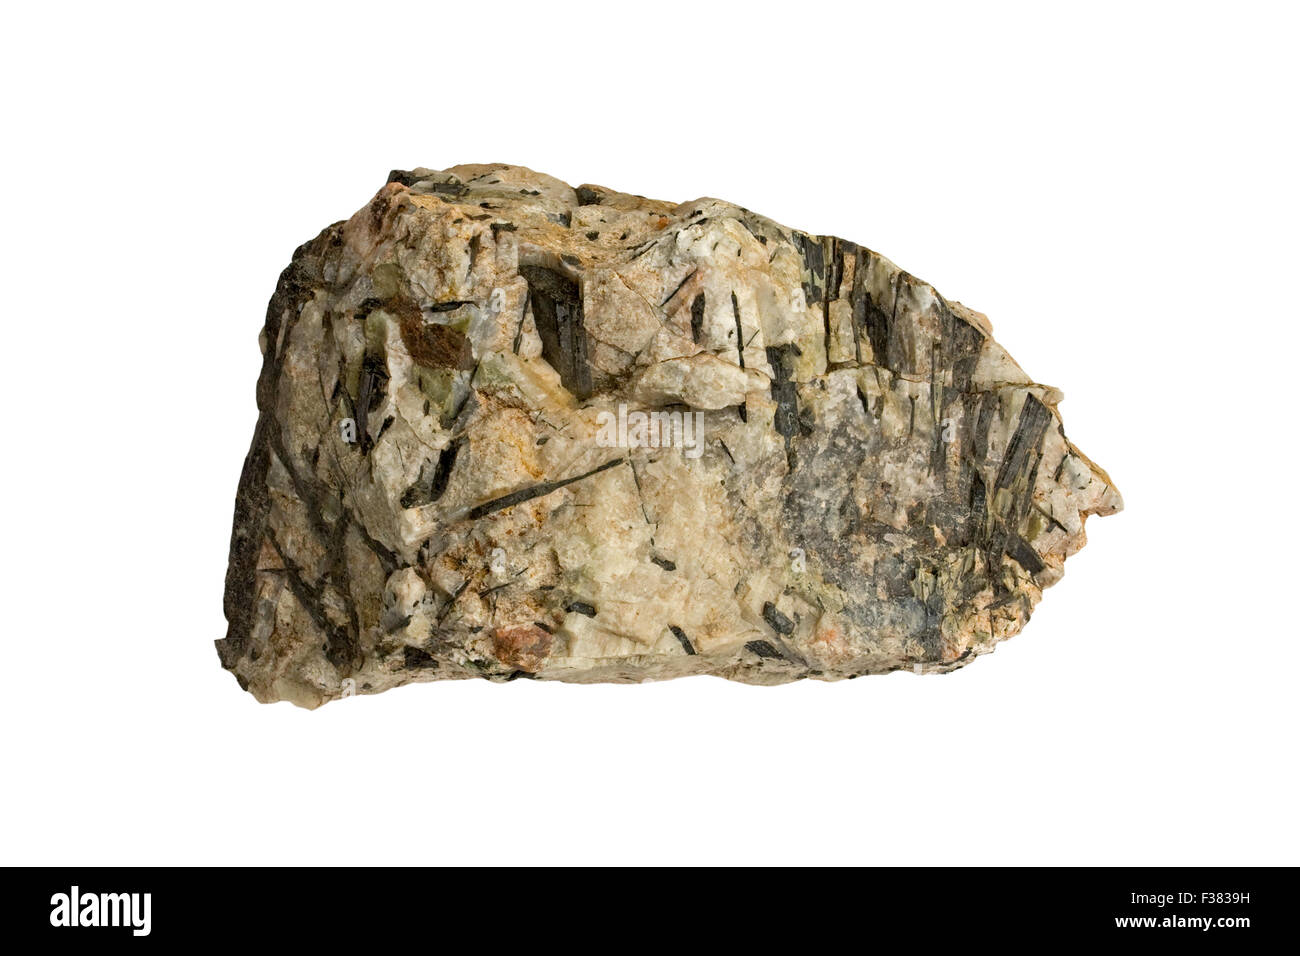 Nepheline syenite pegmatite (dark mineral is aegirine) Stock Photo